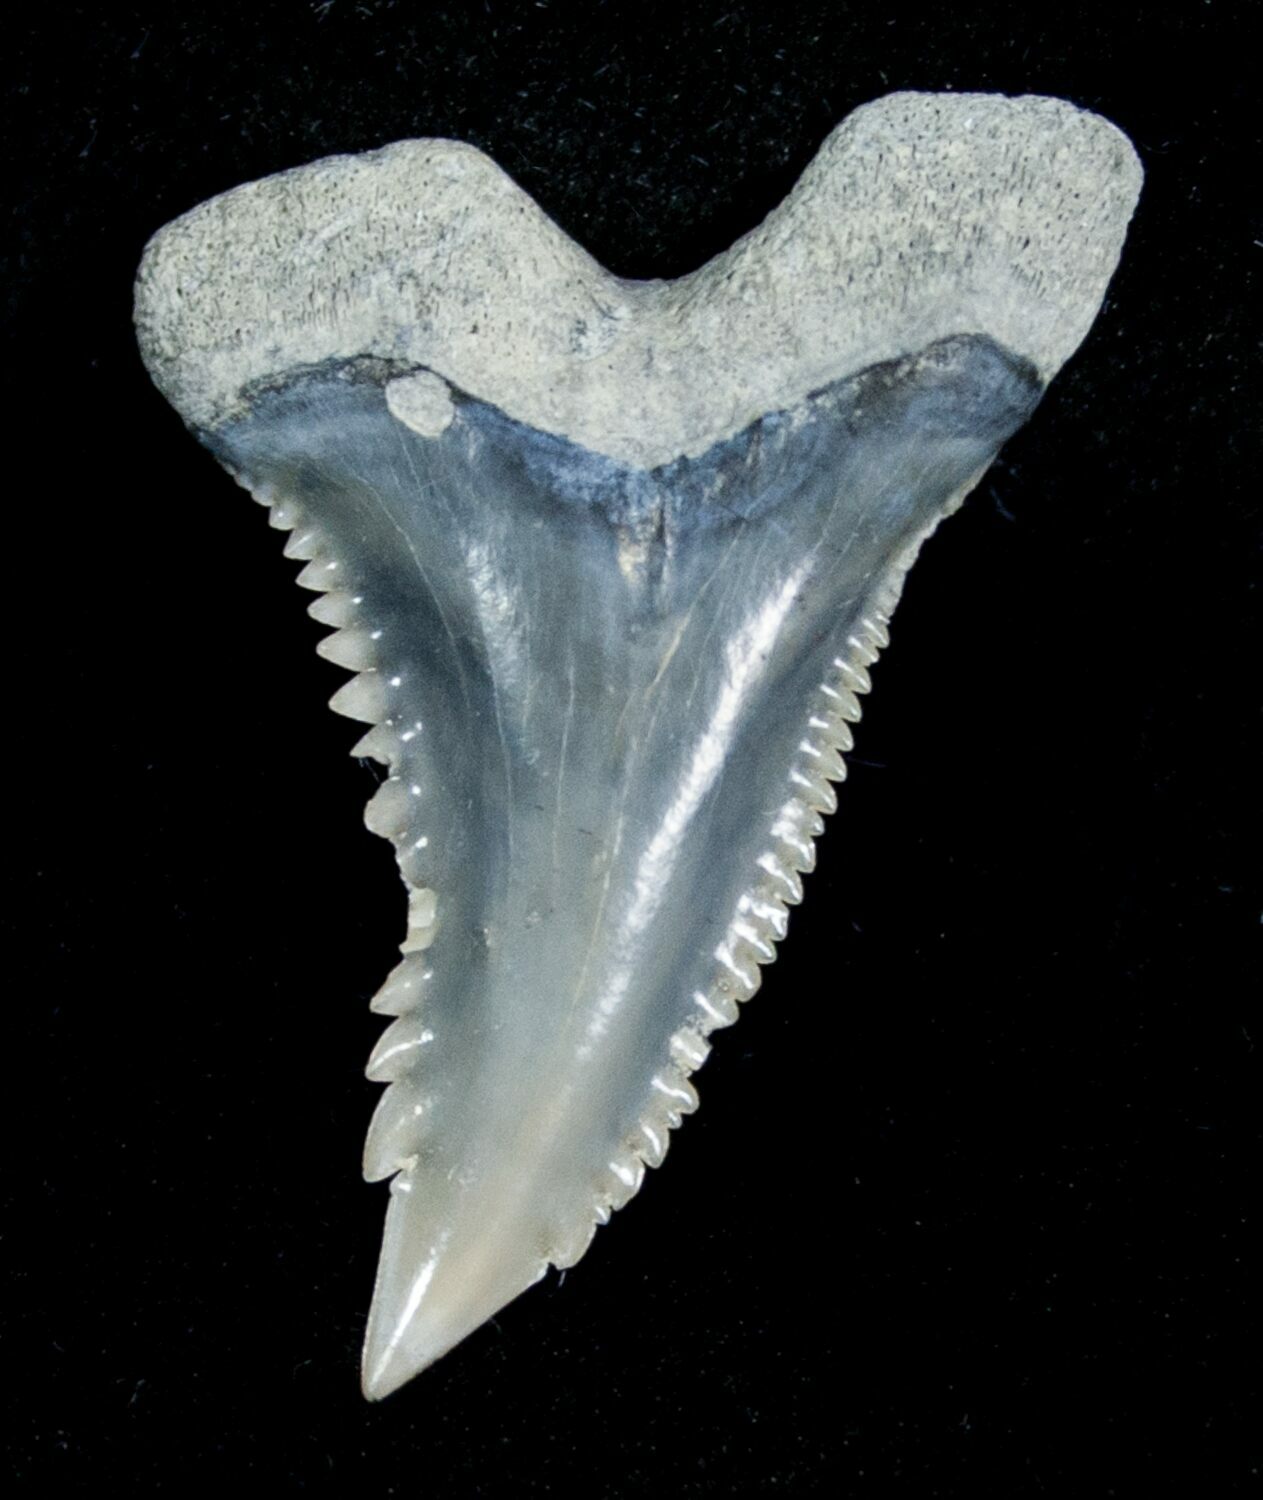 Зубы кошки и зубы акулы. Расположение зубов у акулы.